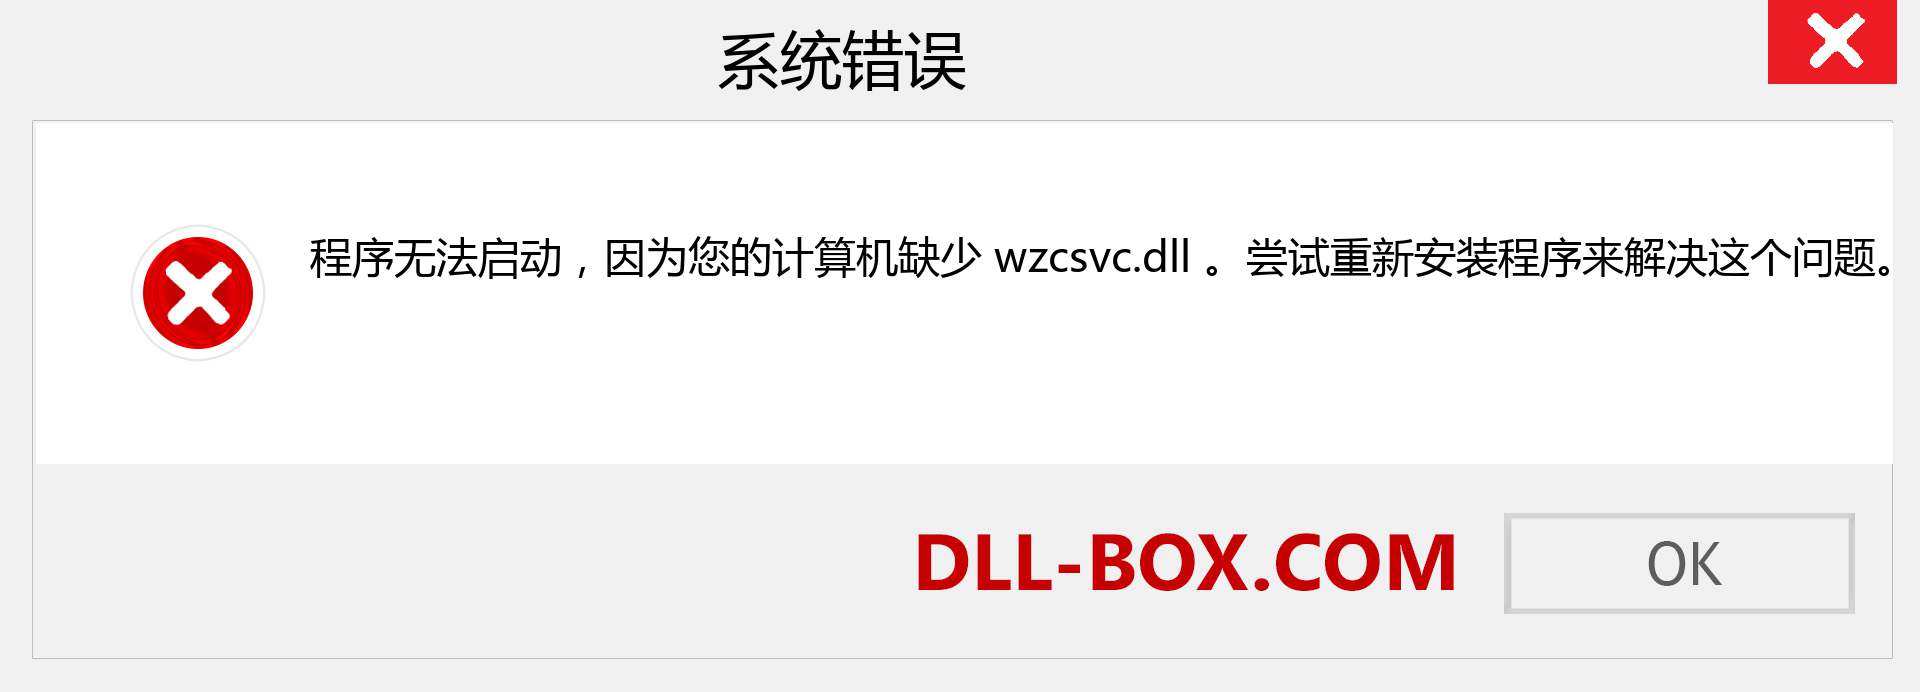 wzcsvc.dll 文件丢失？。 适用于 Windows 7、8、10 的下载 - 修复 Windows、照片、图像上的 wzcsvc dll 丢失错误